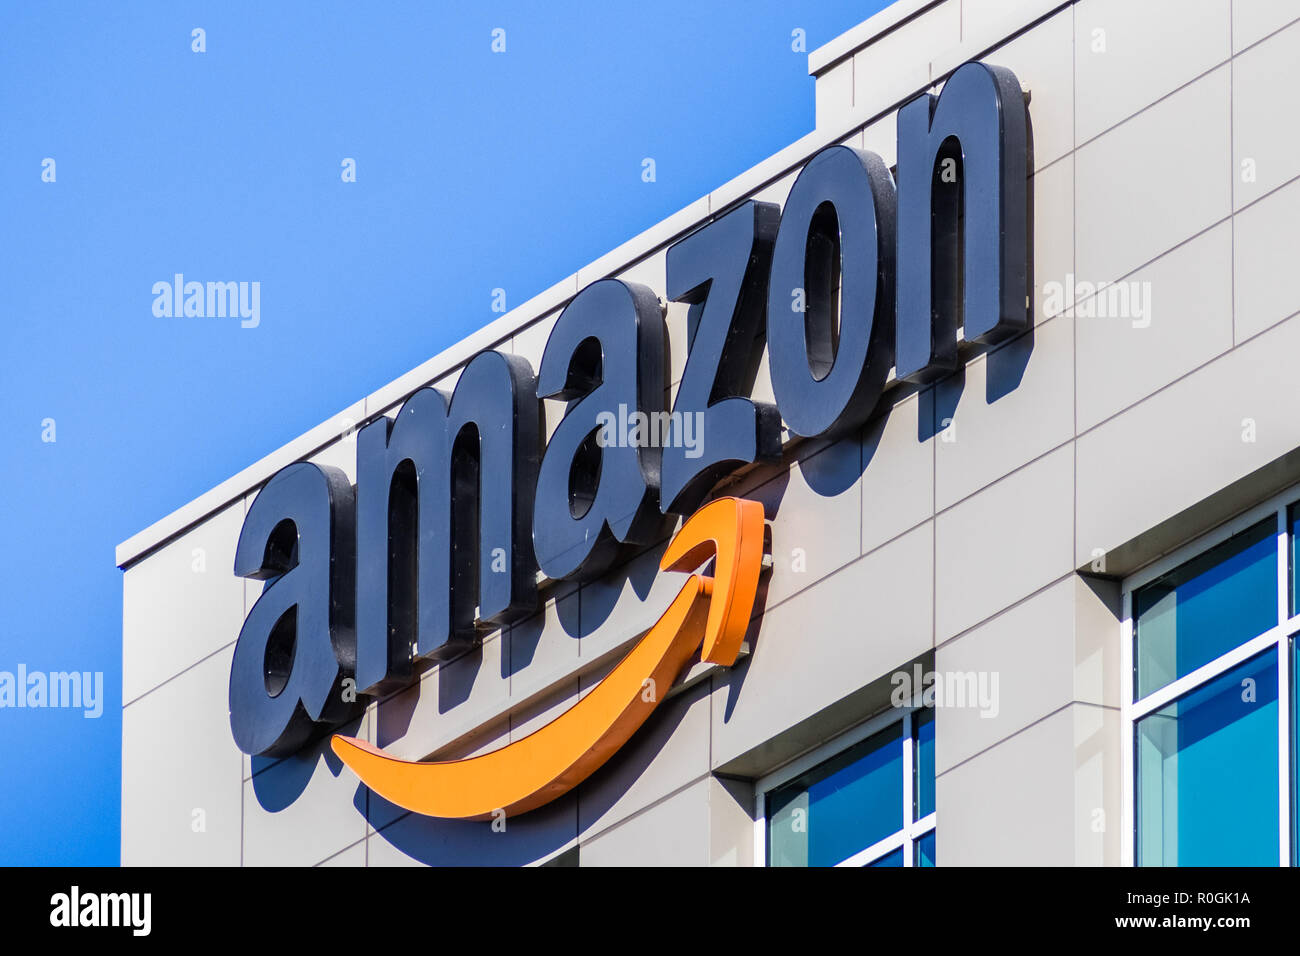 2 novembre 2018 Sunnyvale / CA / STATI UNITI D'AMERICA - logo Amazon sulla facciata di uno dei loro edifici di uffici situati nella Silicon Valley, San Francisco Bay Area Foto Stock